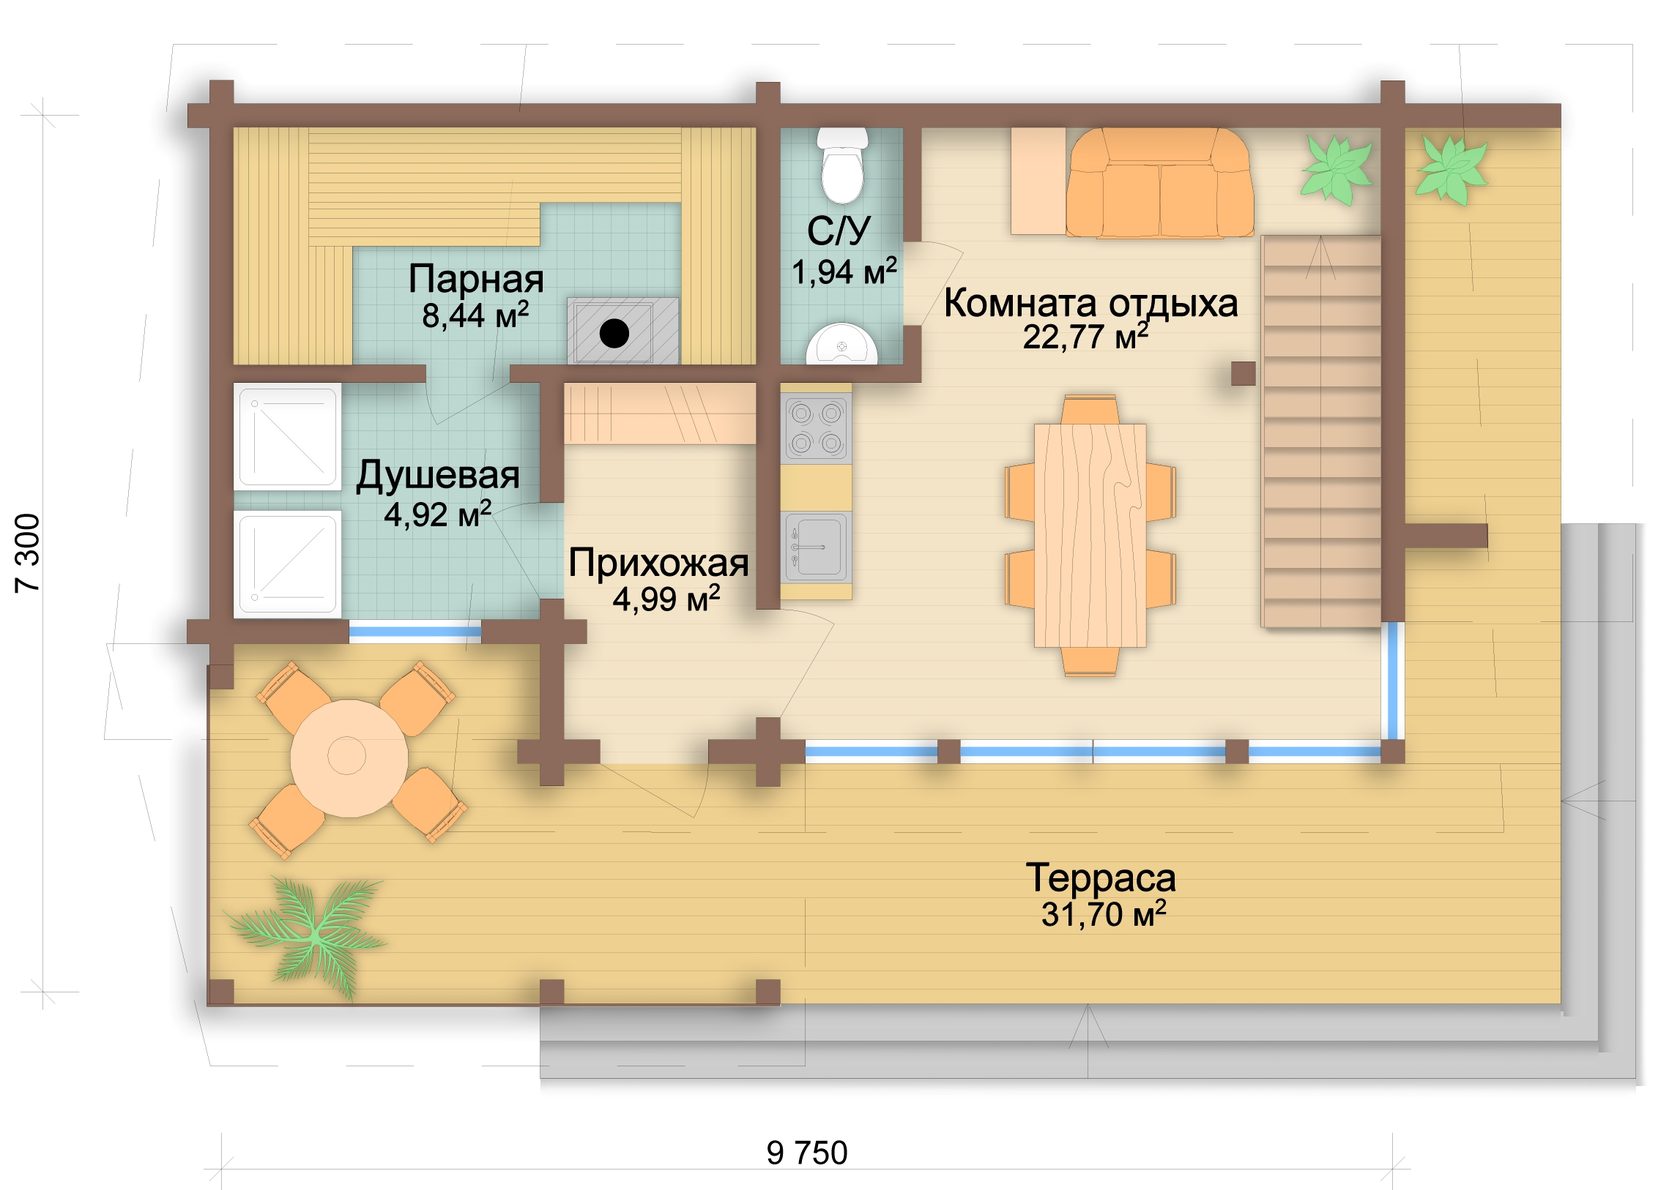 Планировки бань с комнатой отдыха: план с верандой и бассейном, с туалетом и душевой, схемы и примеры в интерьере